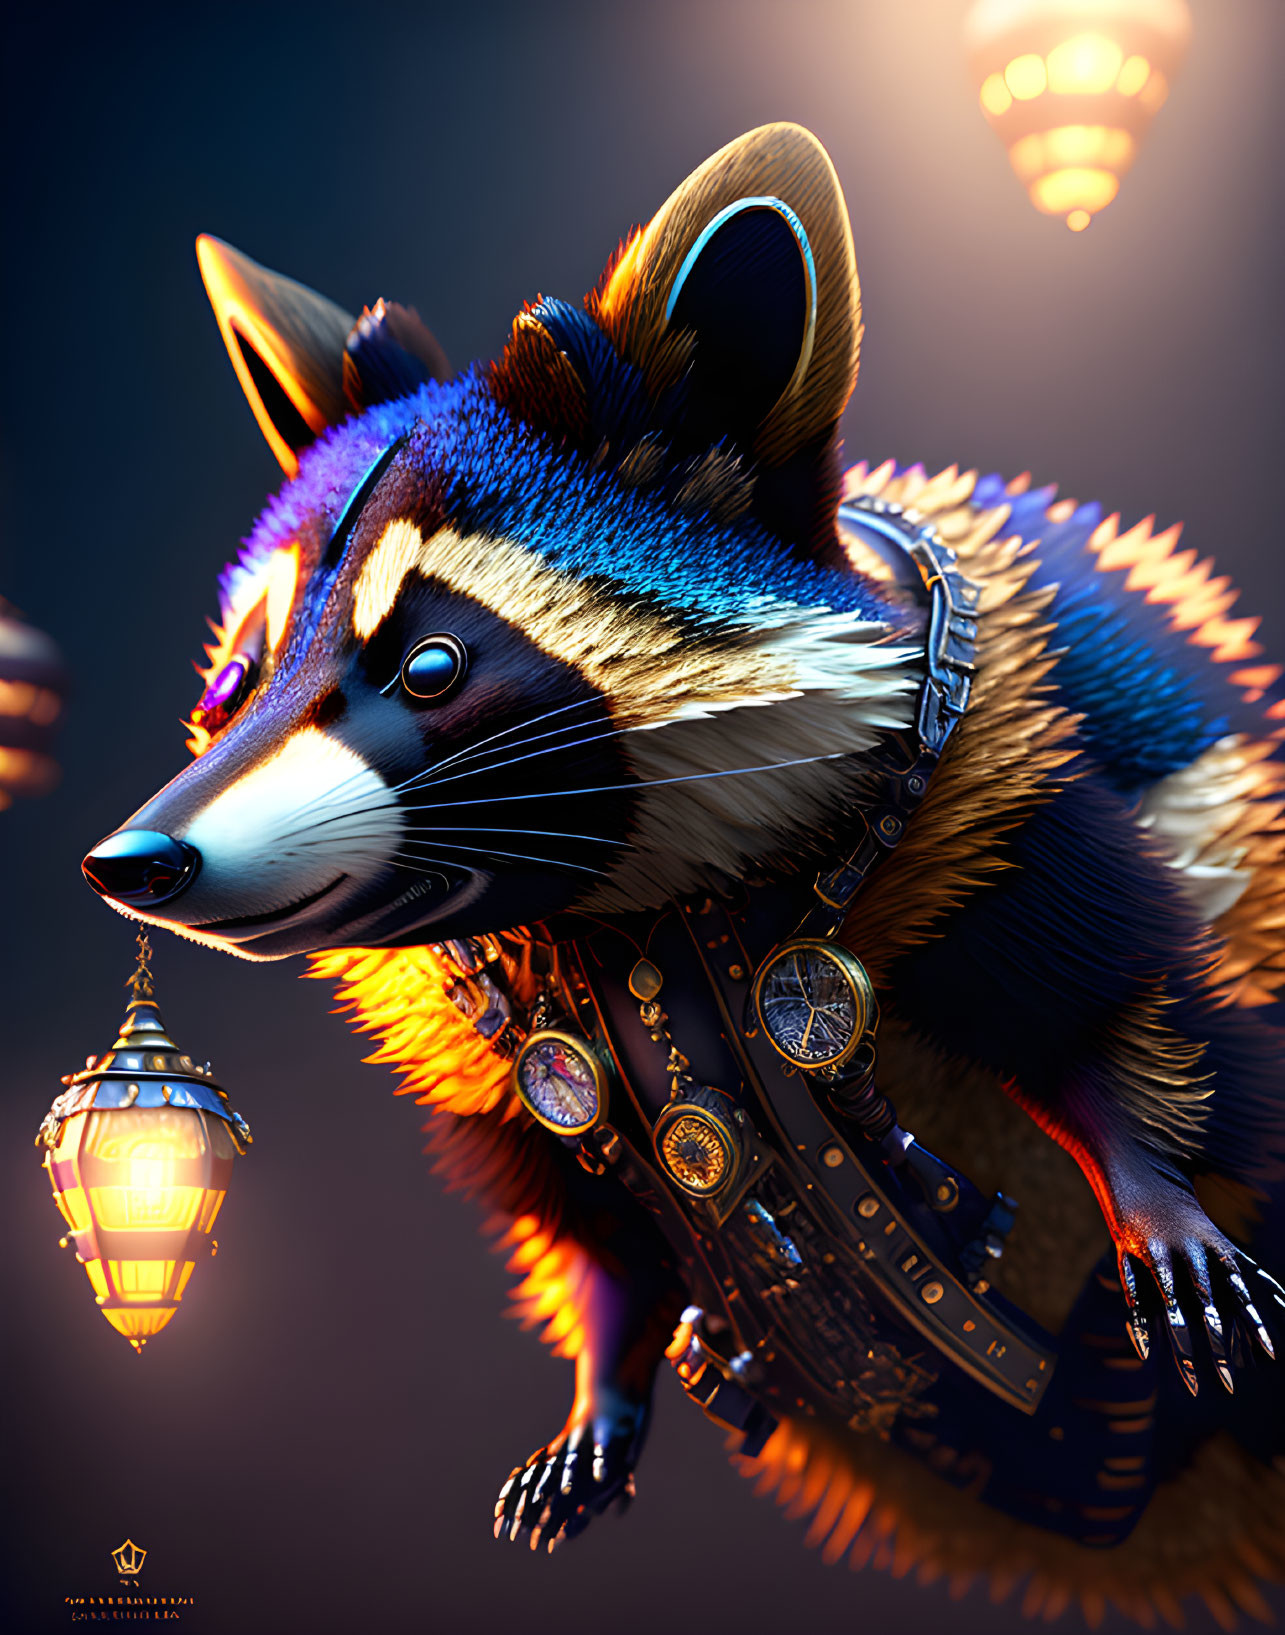 Anthropomorphic raccoon with lantern in intricate attire on dark background